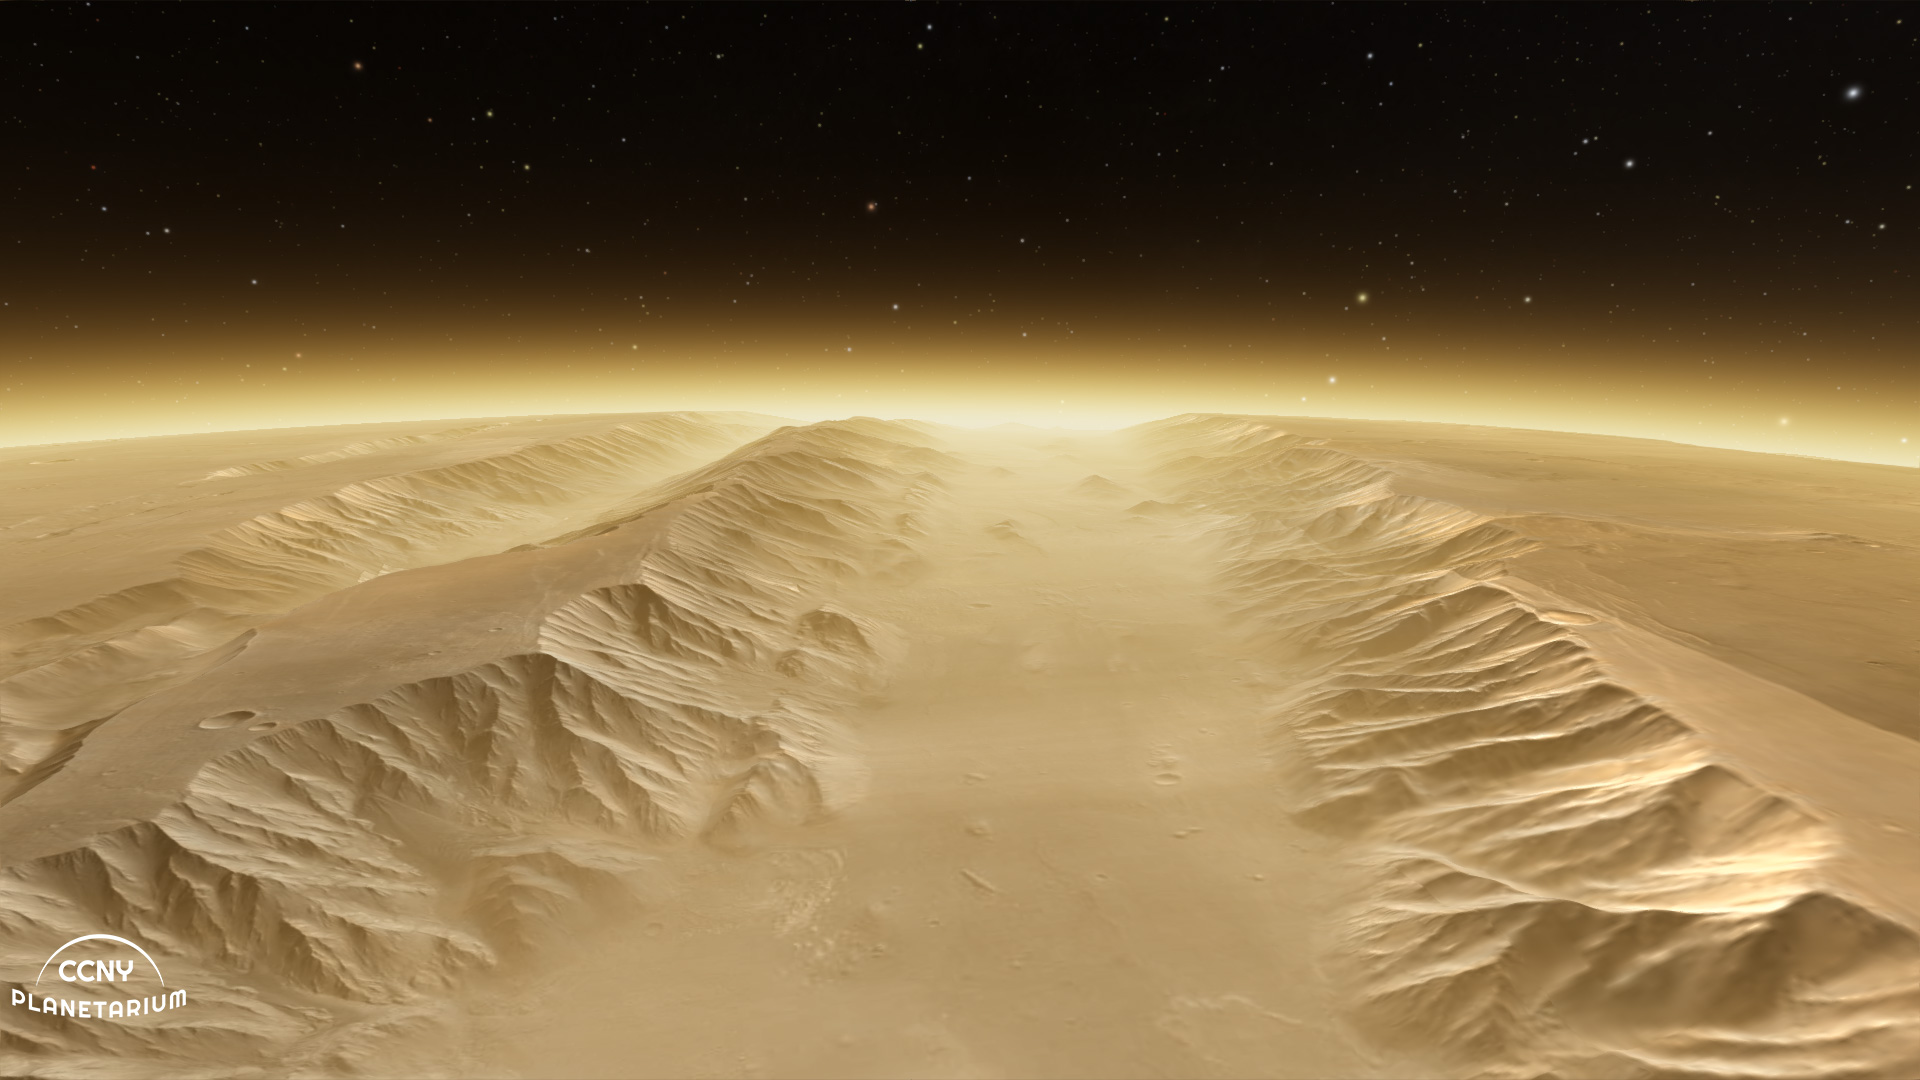 Mars - Valles Marineris | CCNY Planetarium